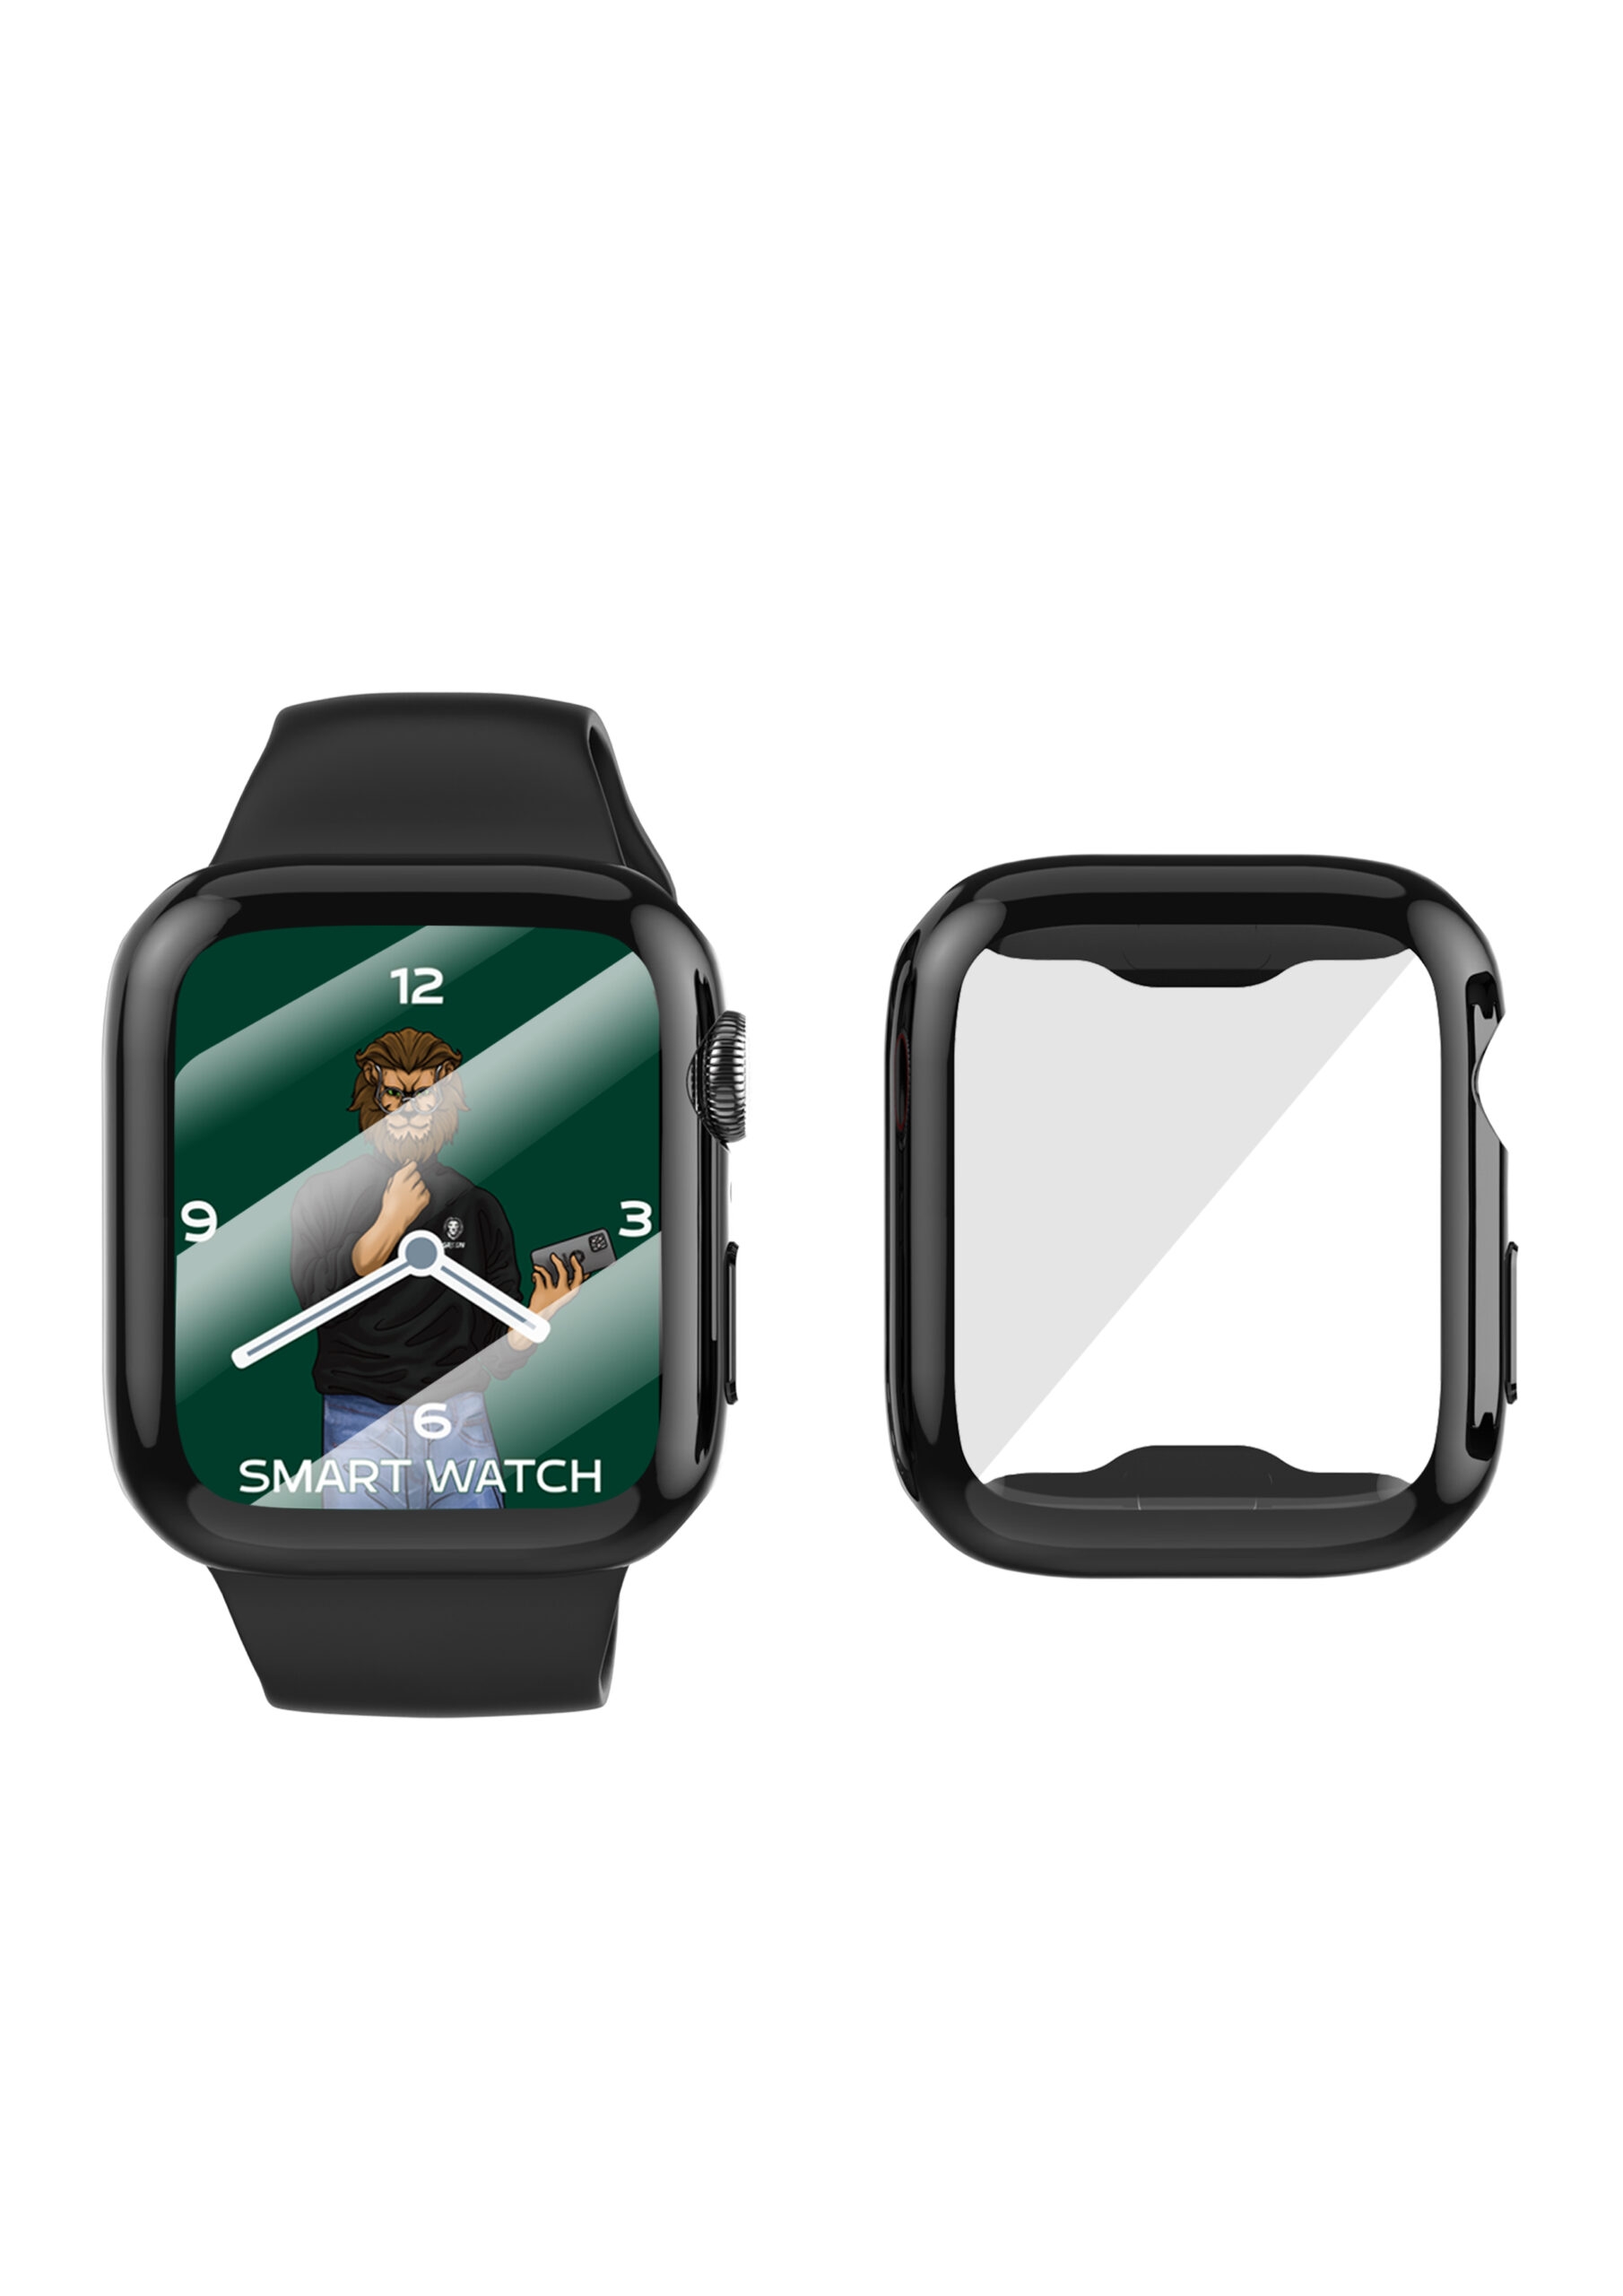 كفر حماية لساعة Apple Watch قياس 44 ملم مع لاصقة للشاشة Guard Pro TPU Case with Glass for Apple Watch 44MM - Green